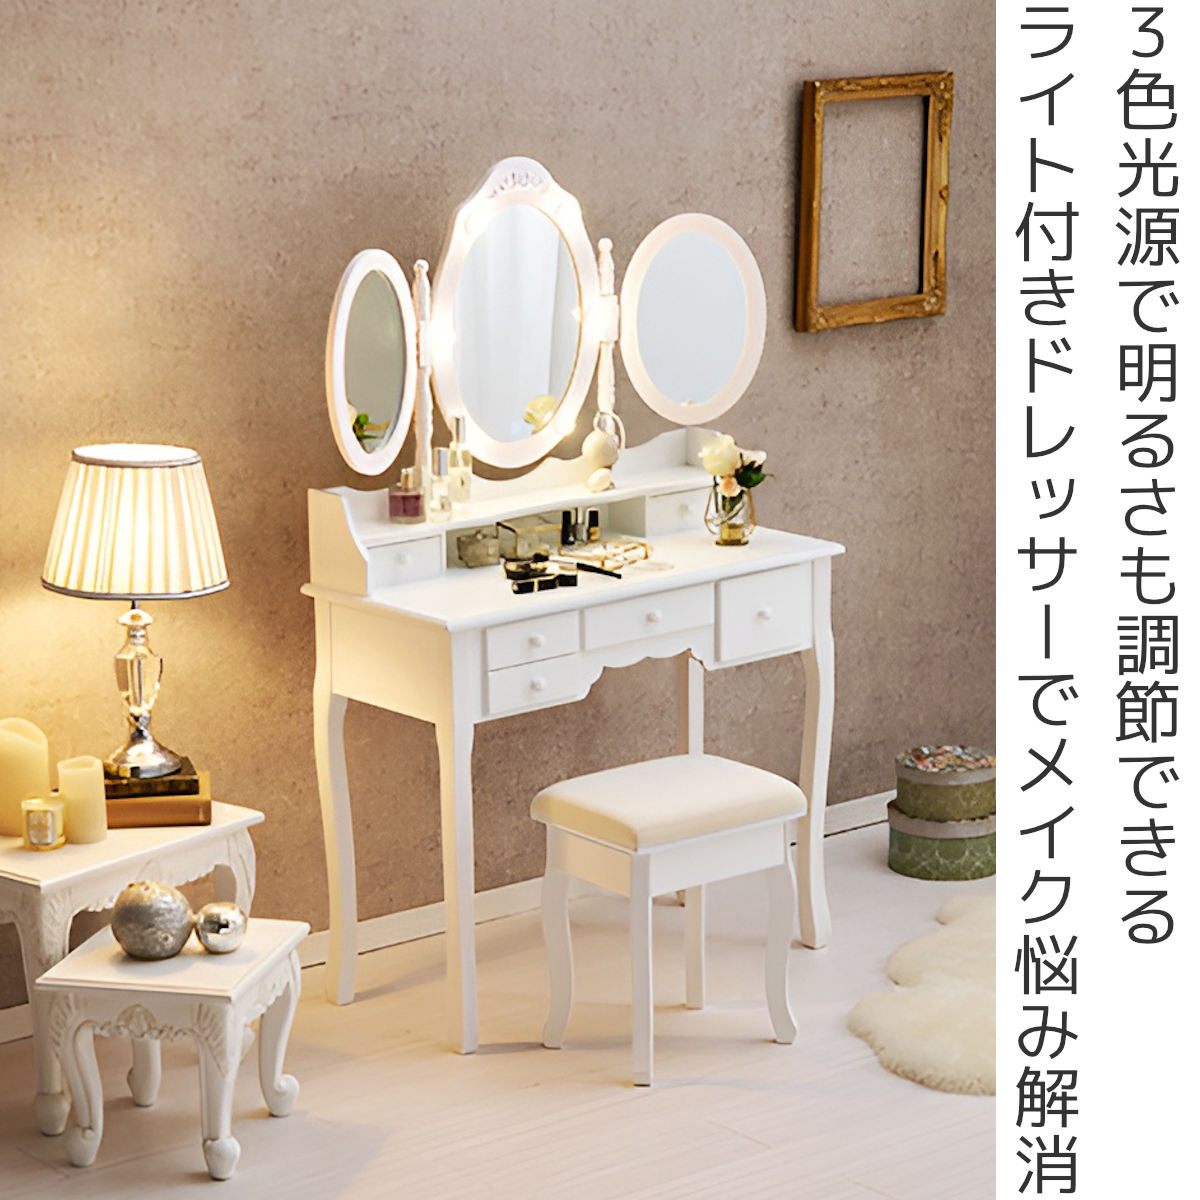 ドレッサー コンパクト 白 3色LED ライト収納沢山 化粧台 鏡台 